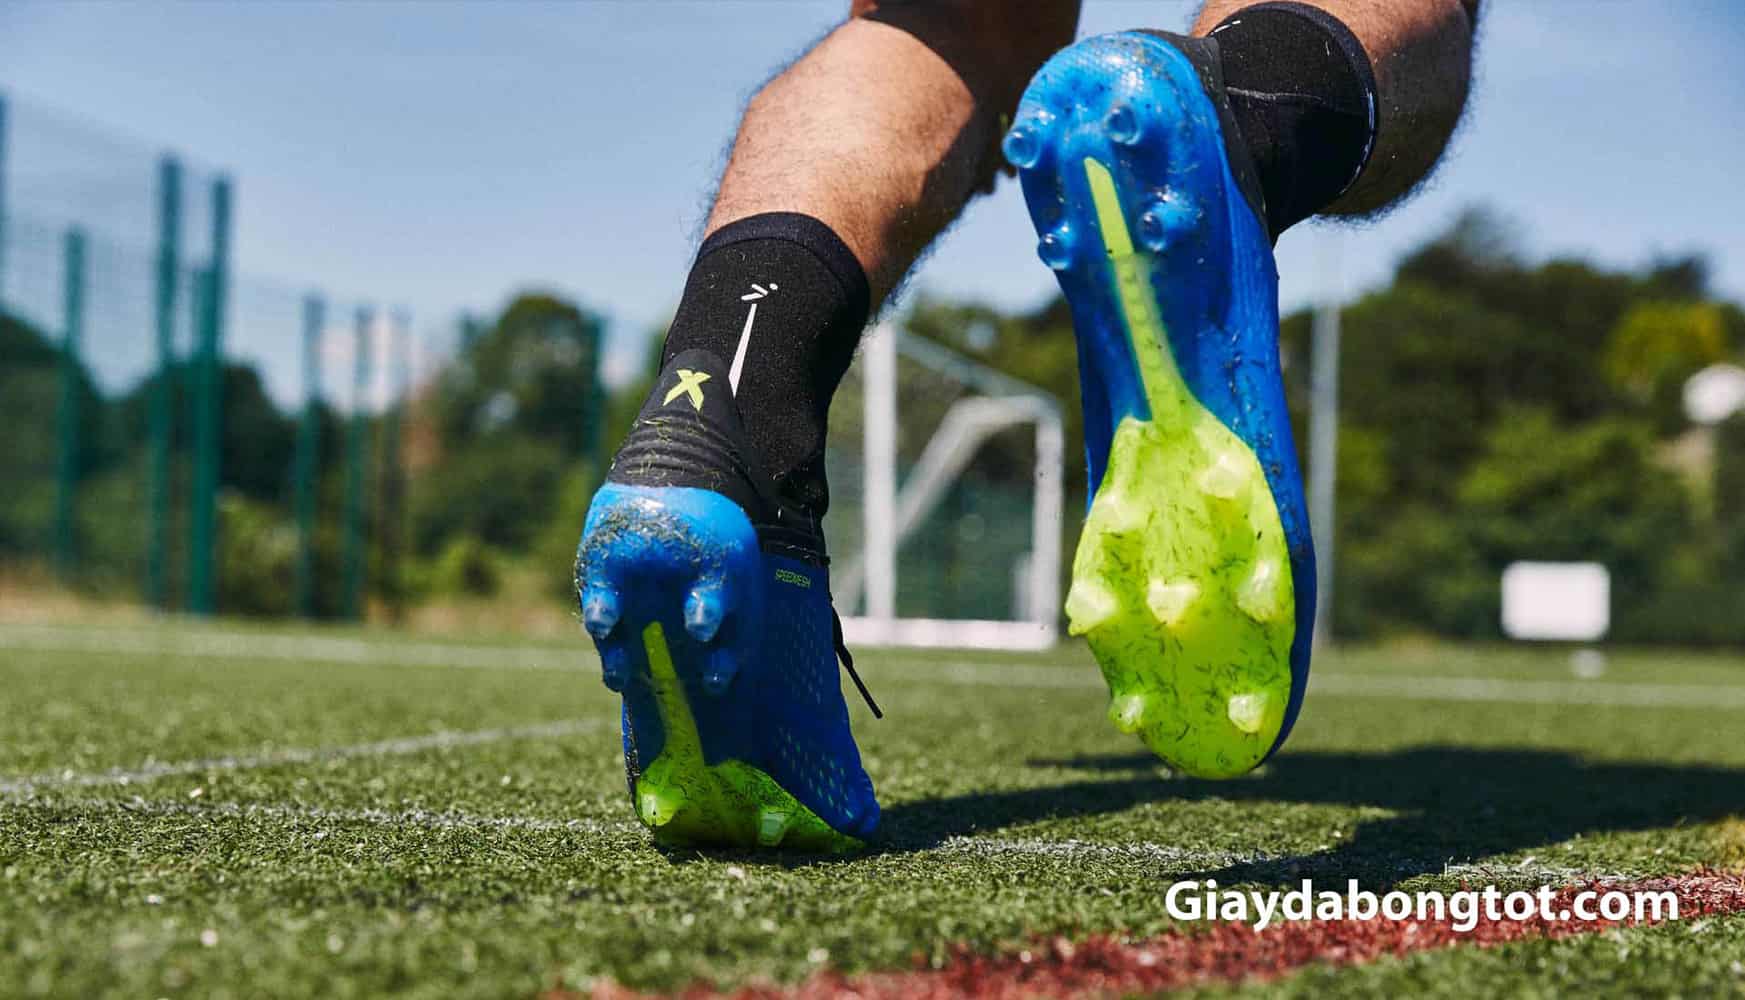 Giày bóng đá sân cỏ tự nhiên Adidas X18.1 được sử dụng tại Worldcup 2018